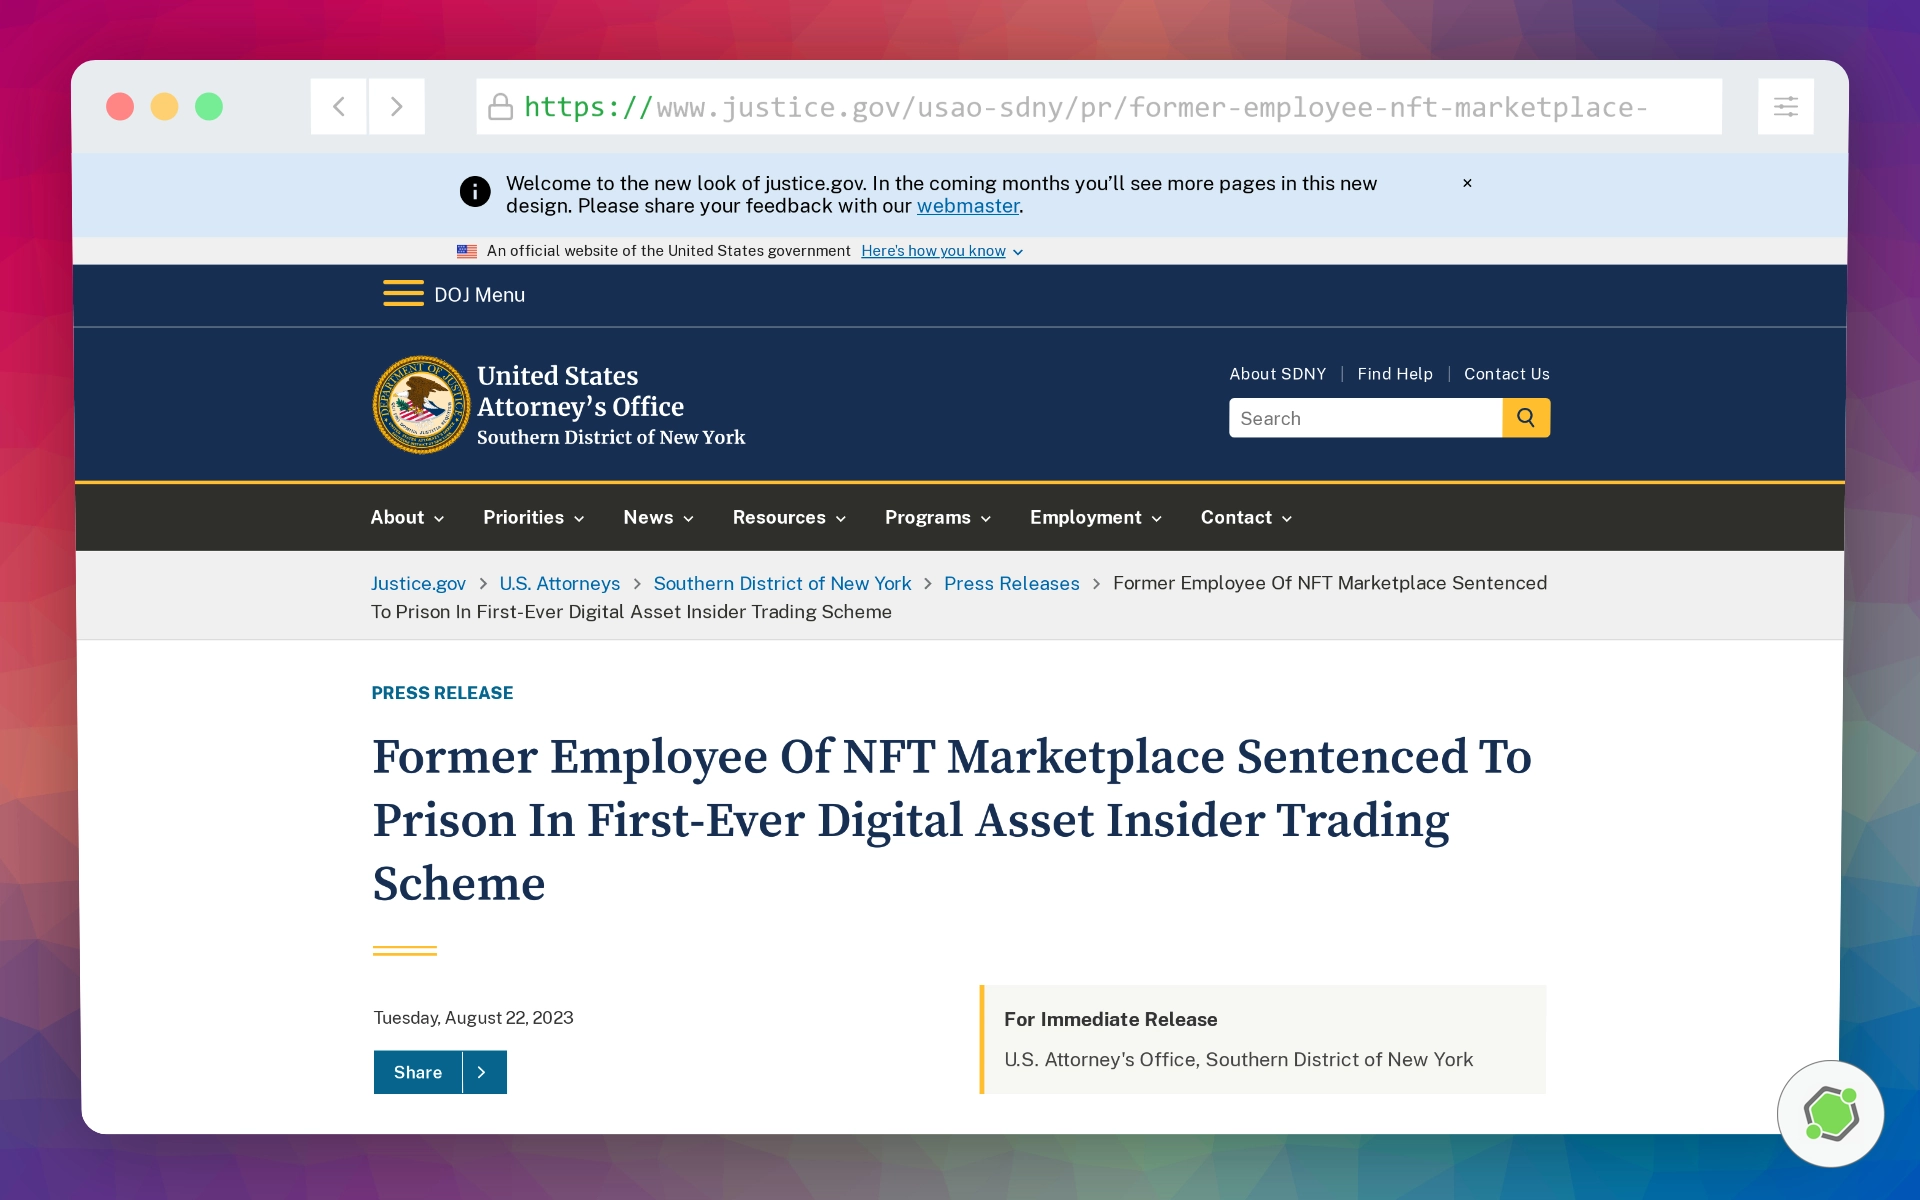 Nota de prensa oficial sobre el ex empleado de NFT Marketplace sentenciado a prisión por el primer esquema de uso de información privilegiada sobre activos digitales.